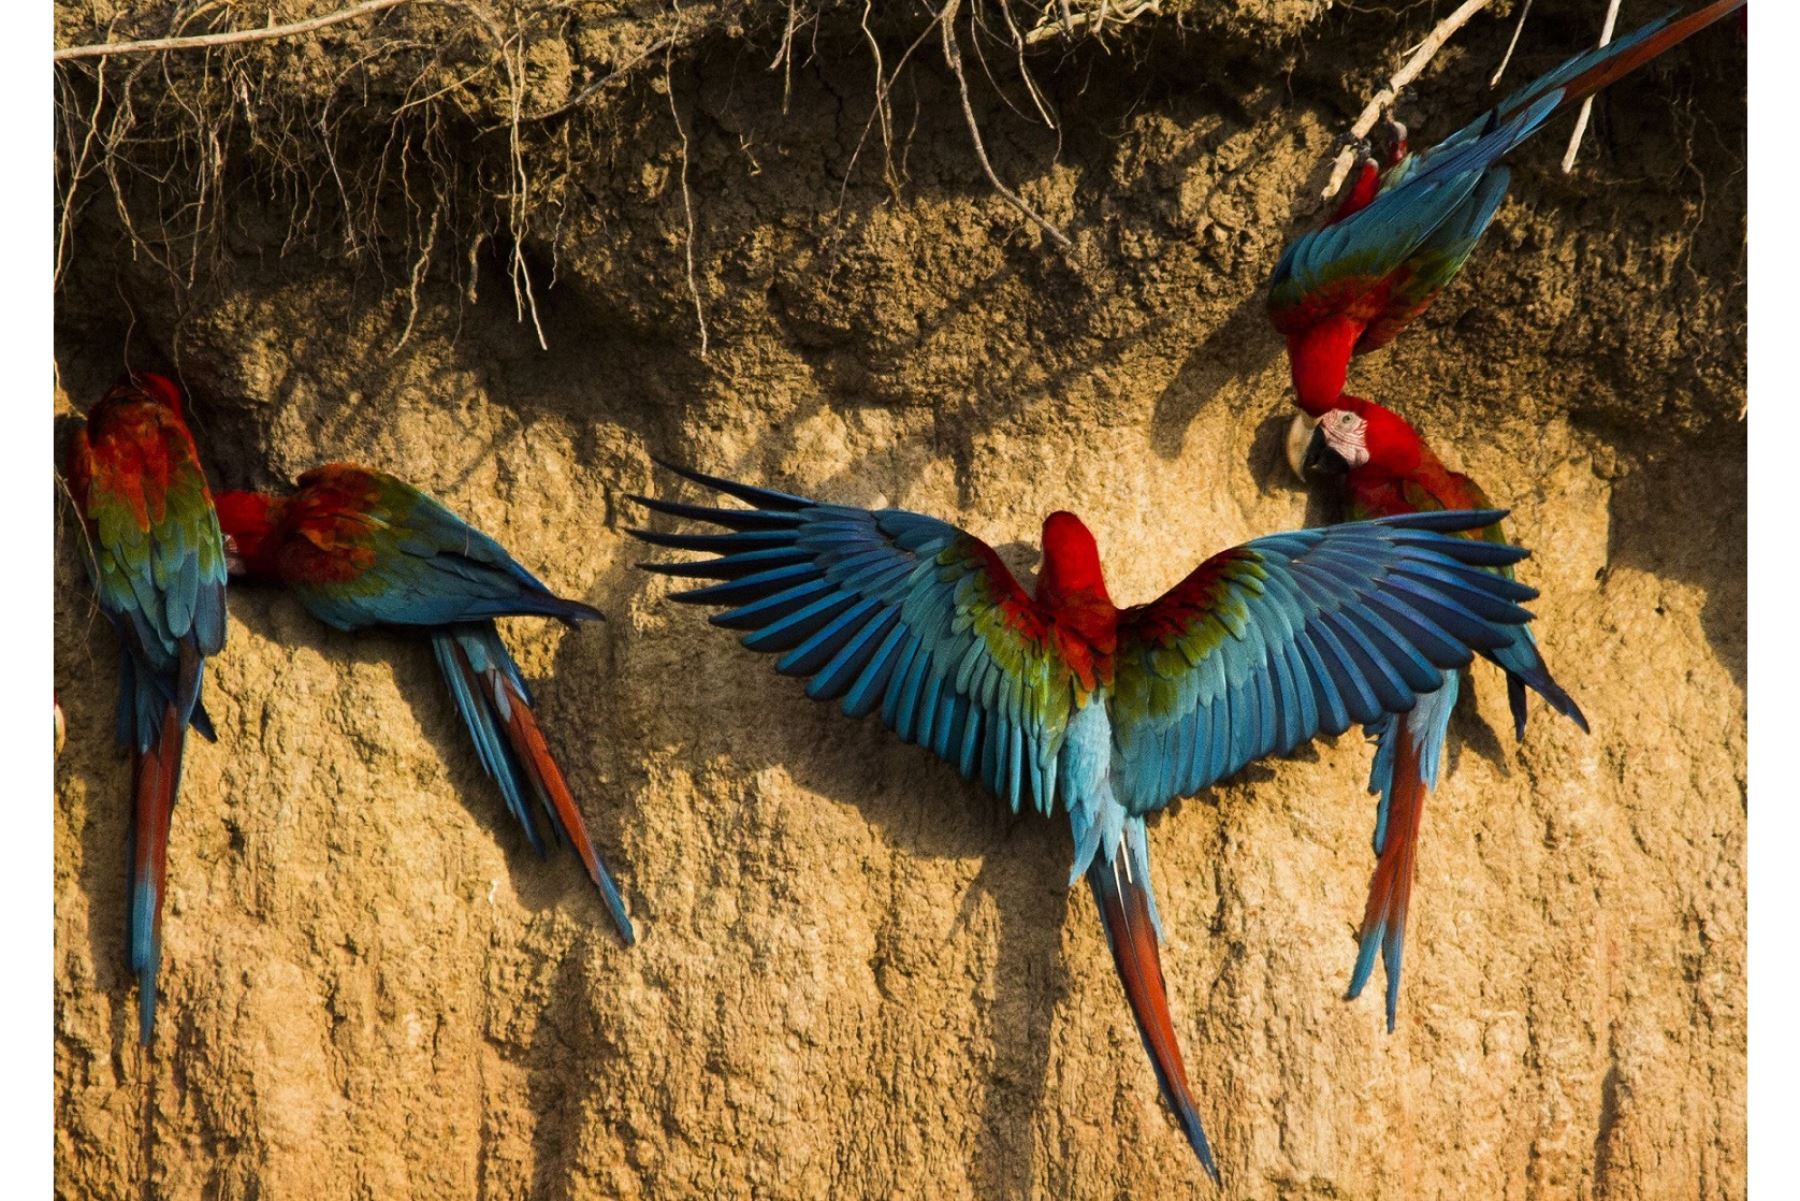 Con 1,351 especies registradas y cientos de participantes, el Perú logró una cifra récord de registro de aves y recuperó así el liderazgo en esta competencia internacional luego de 3 años.